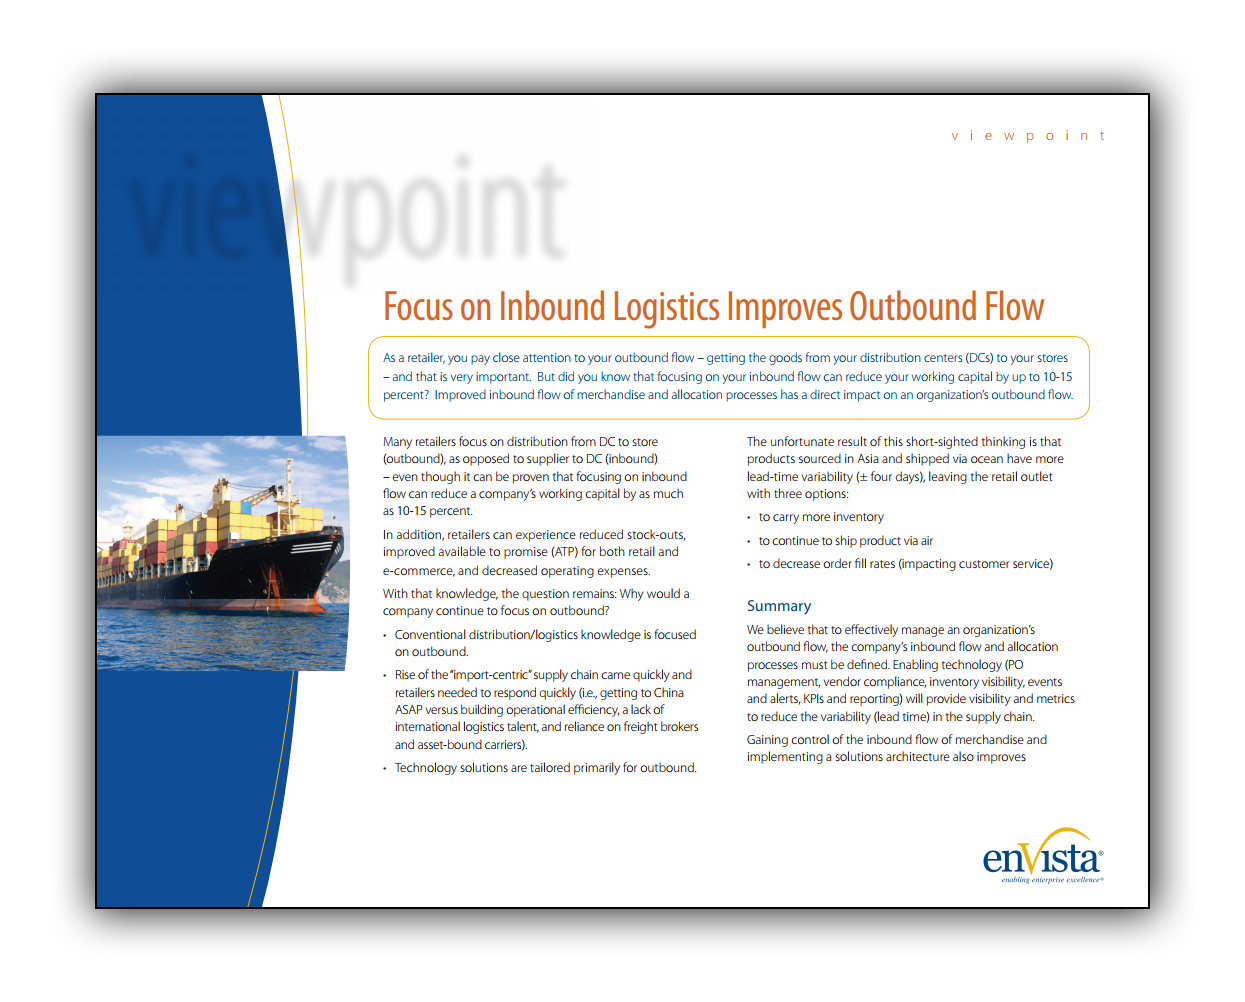 Image_focus-on-inbound-logistics-improves-outbound-flow.png